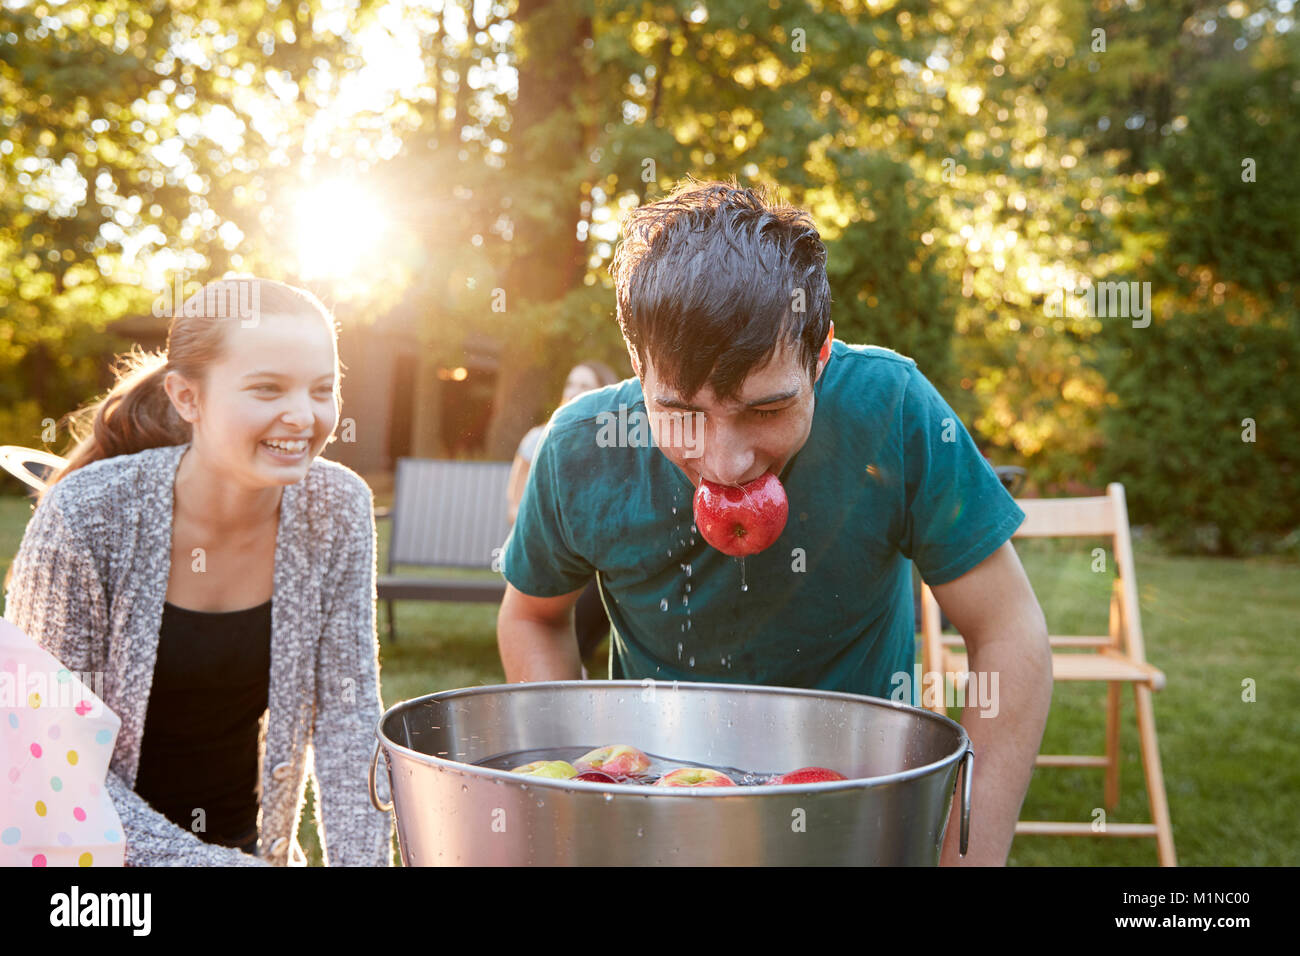 Adolescente, Apple en boca, Apple flotando en el garden party Foto de stock